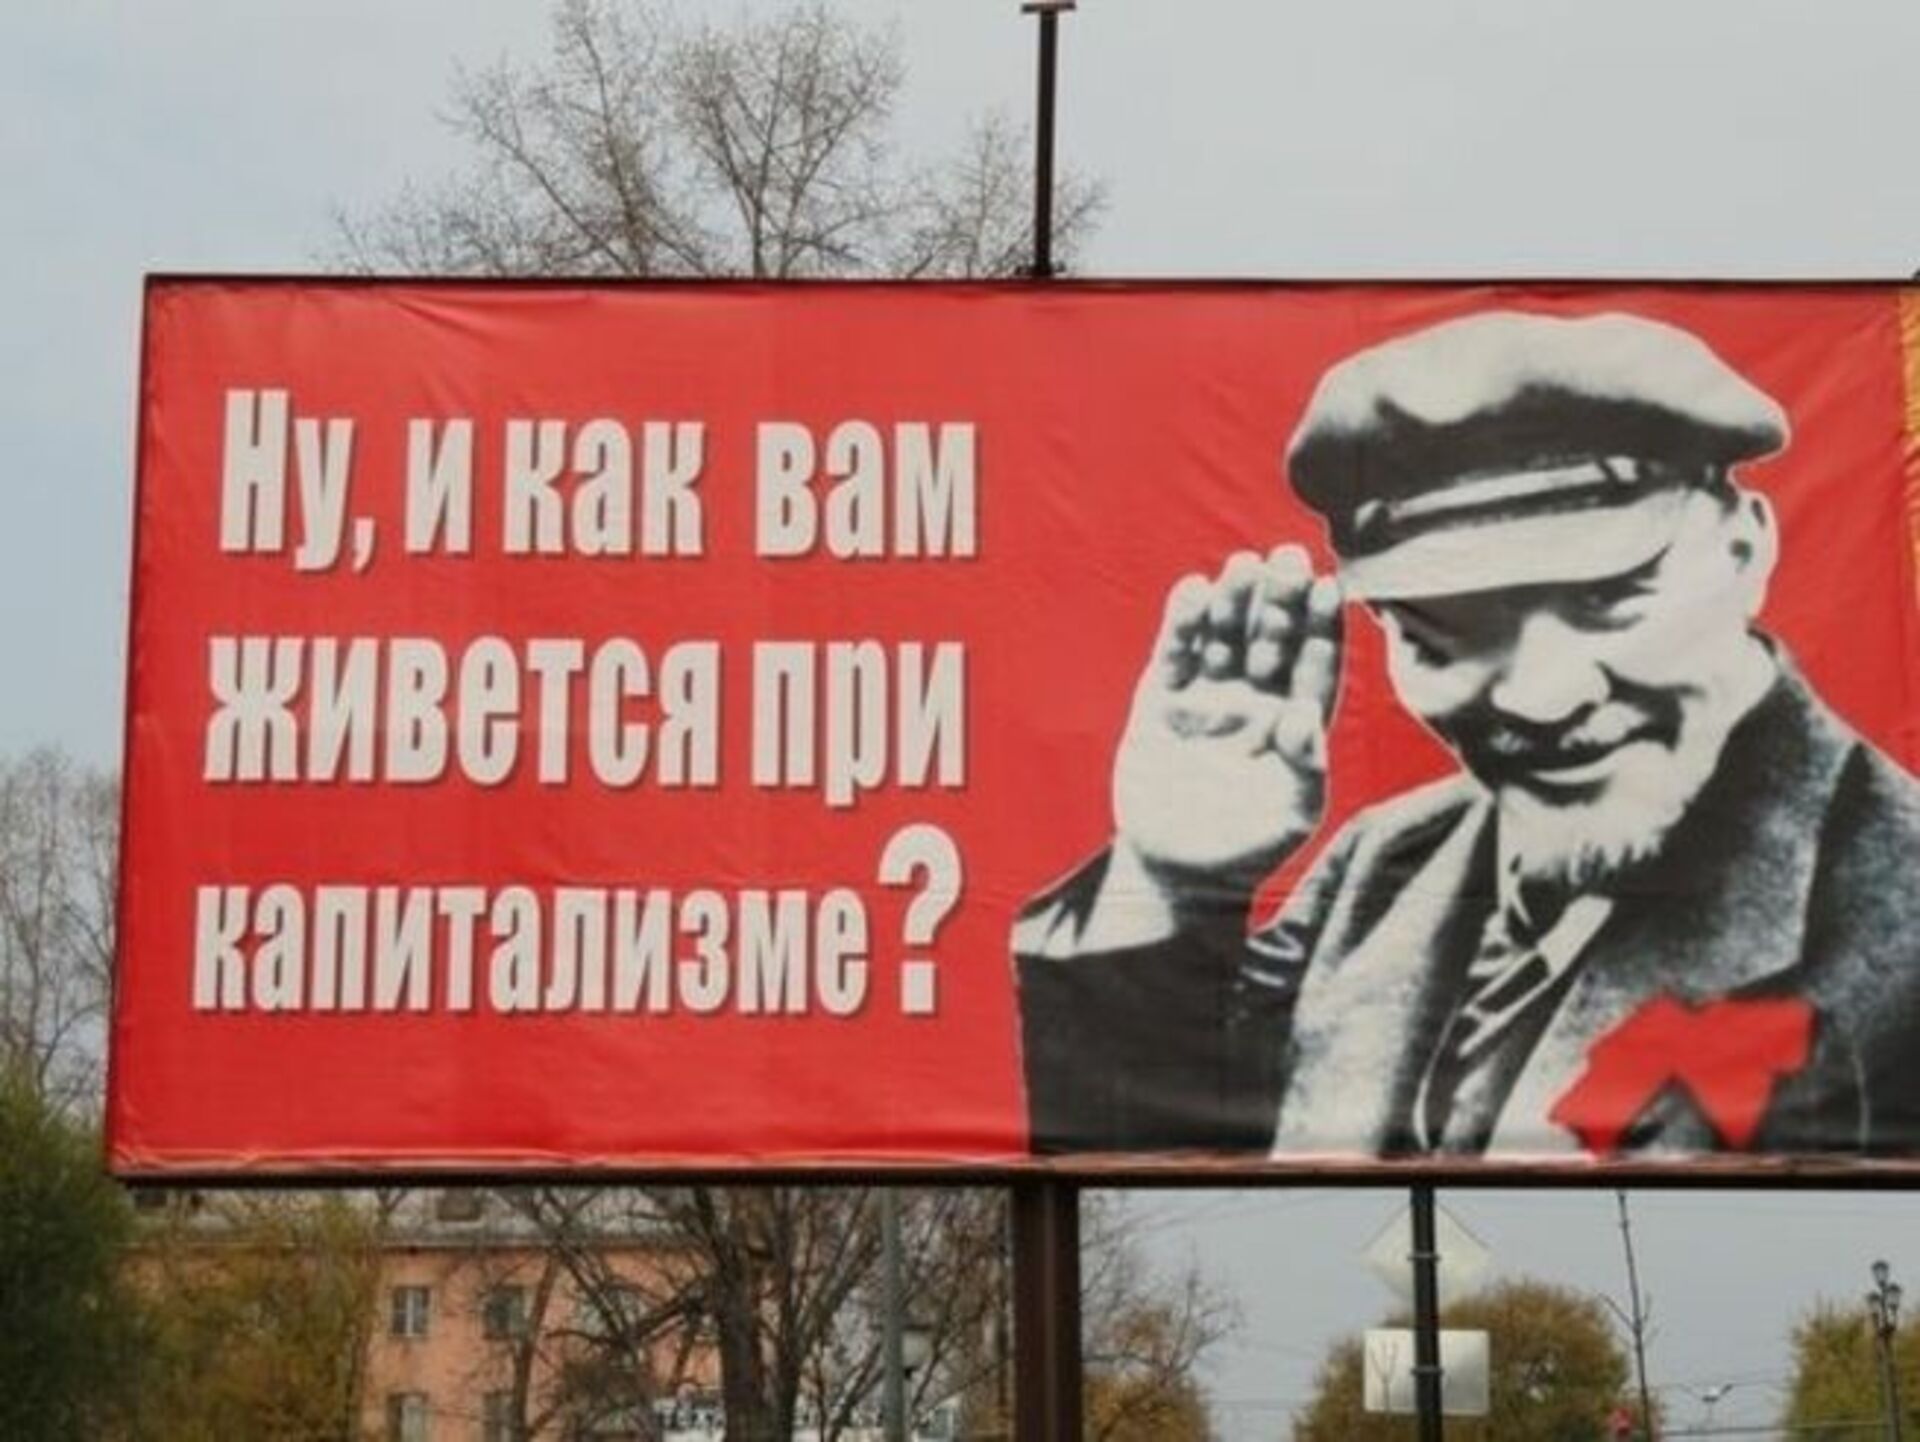 Kak vam. Ну как вам живется при капитализме товарищи. Коммунисты плакат Ленин. Ну и как вам живется при капитализме товарищи плакат. Хорошо вам живется при капитализме.